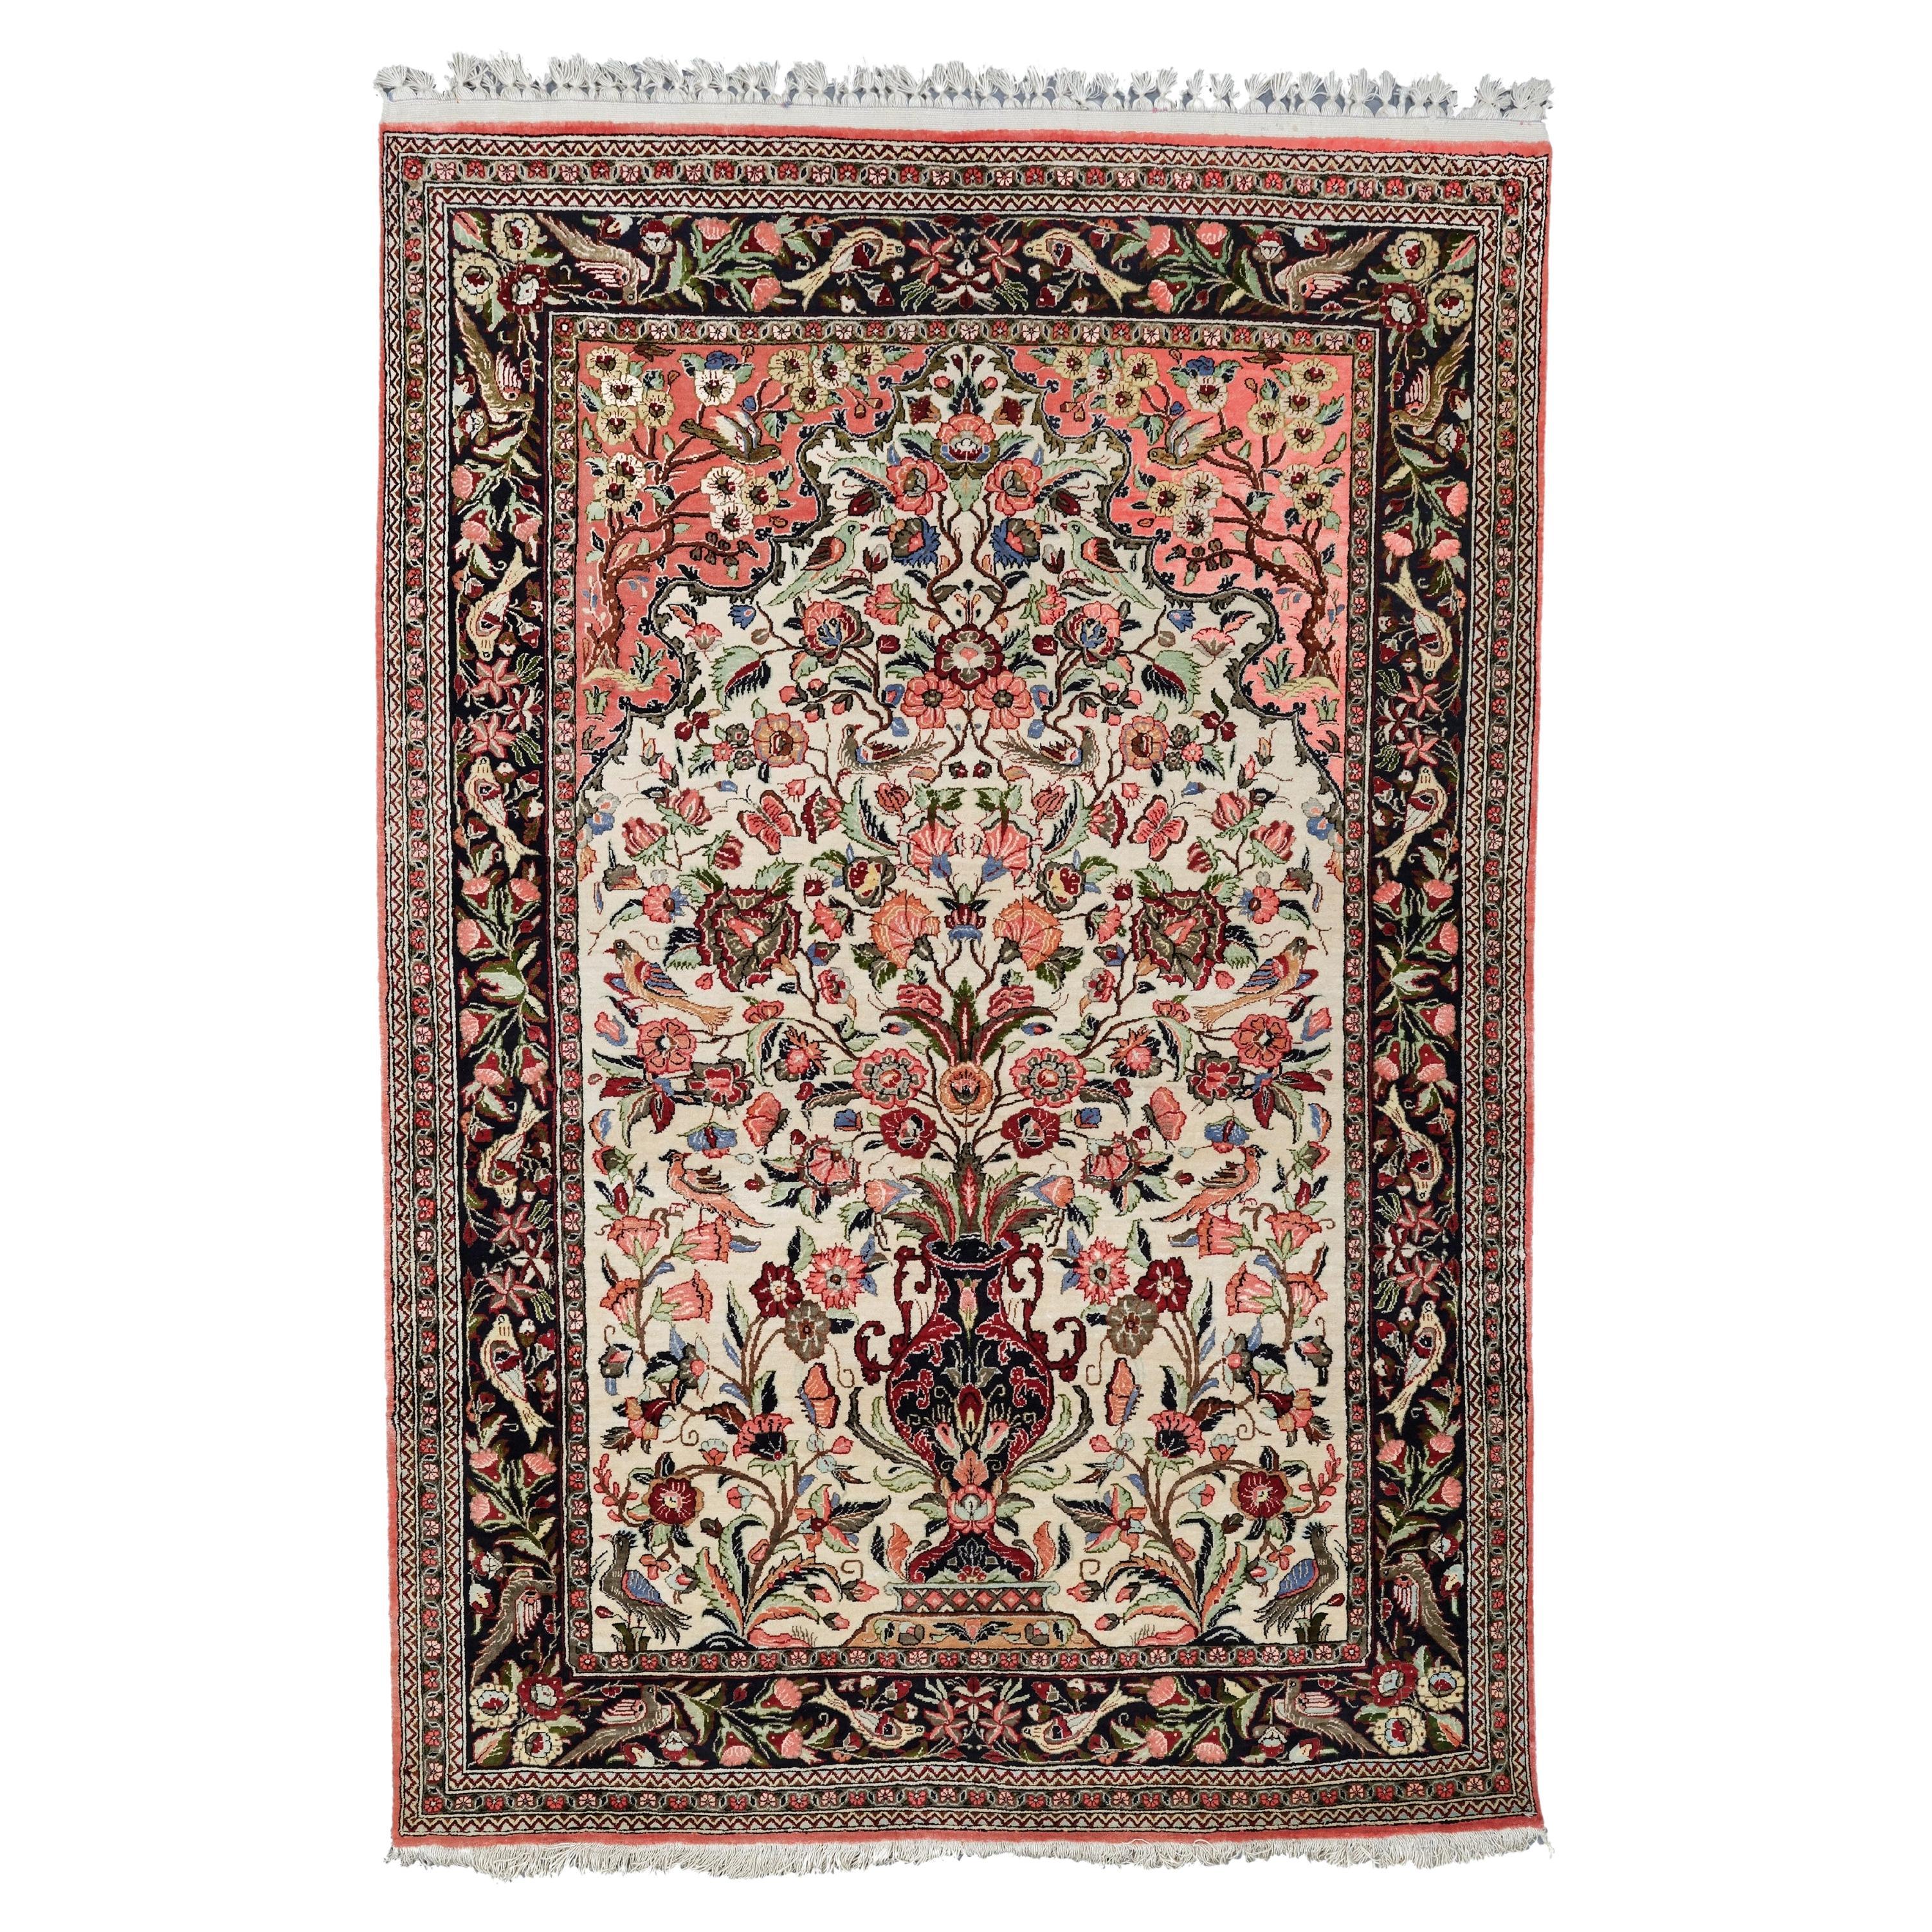 Tapis de prière en soie de Qum - Tapis de soie de Qum du 19ème siècle, tapis vintage